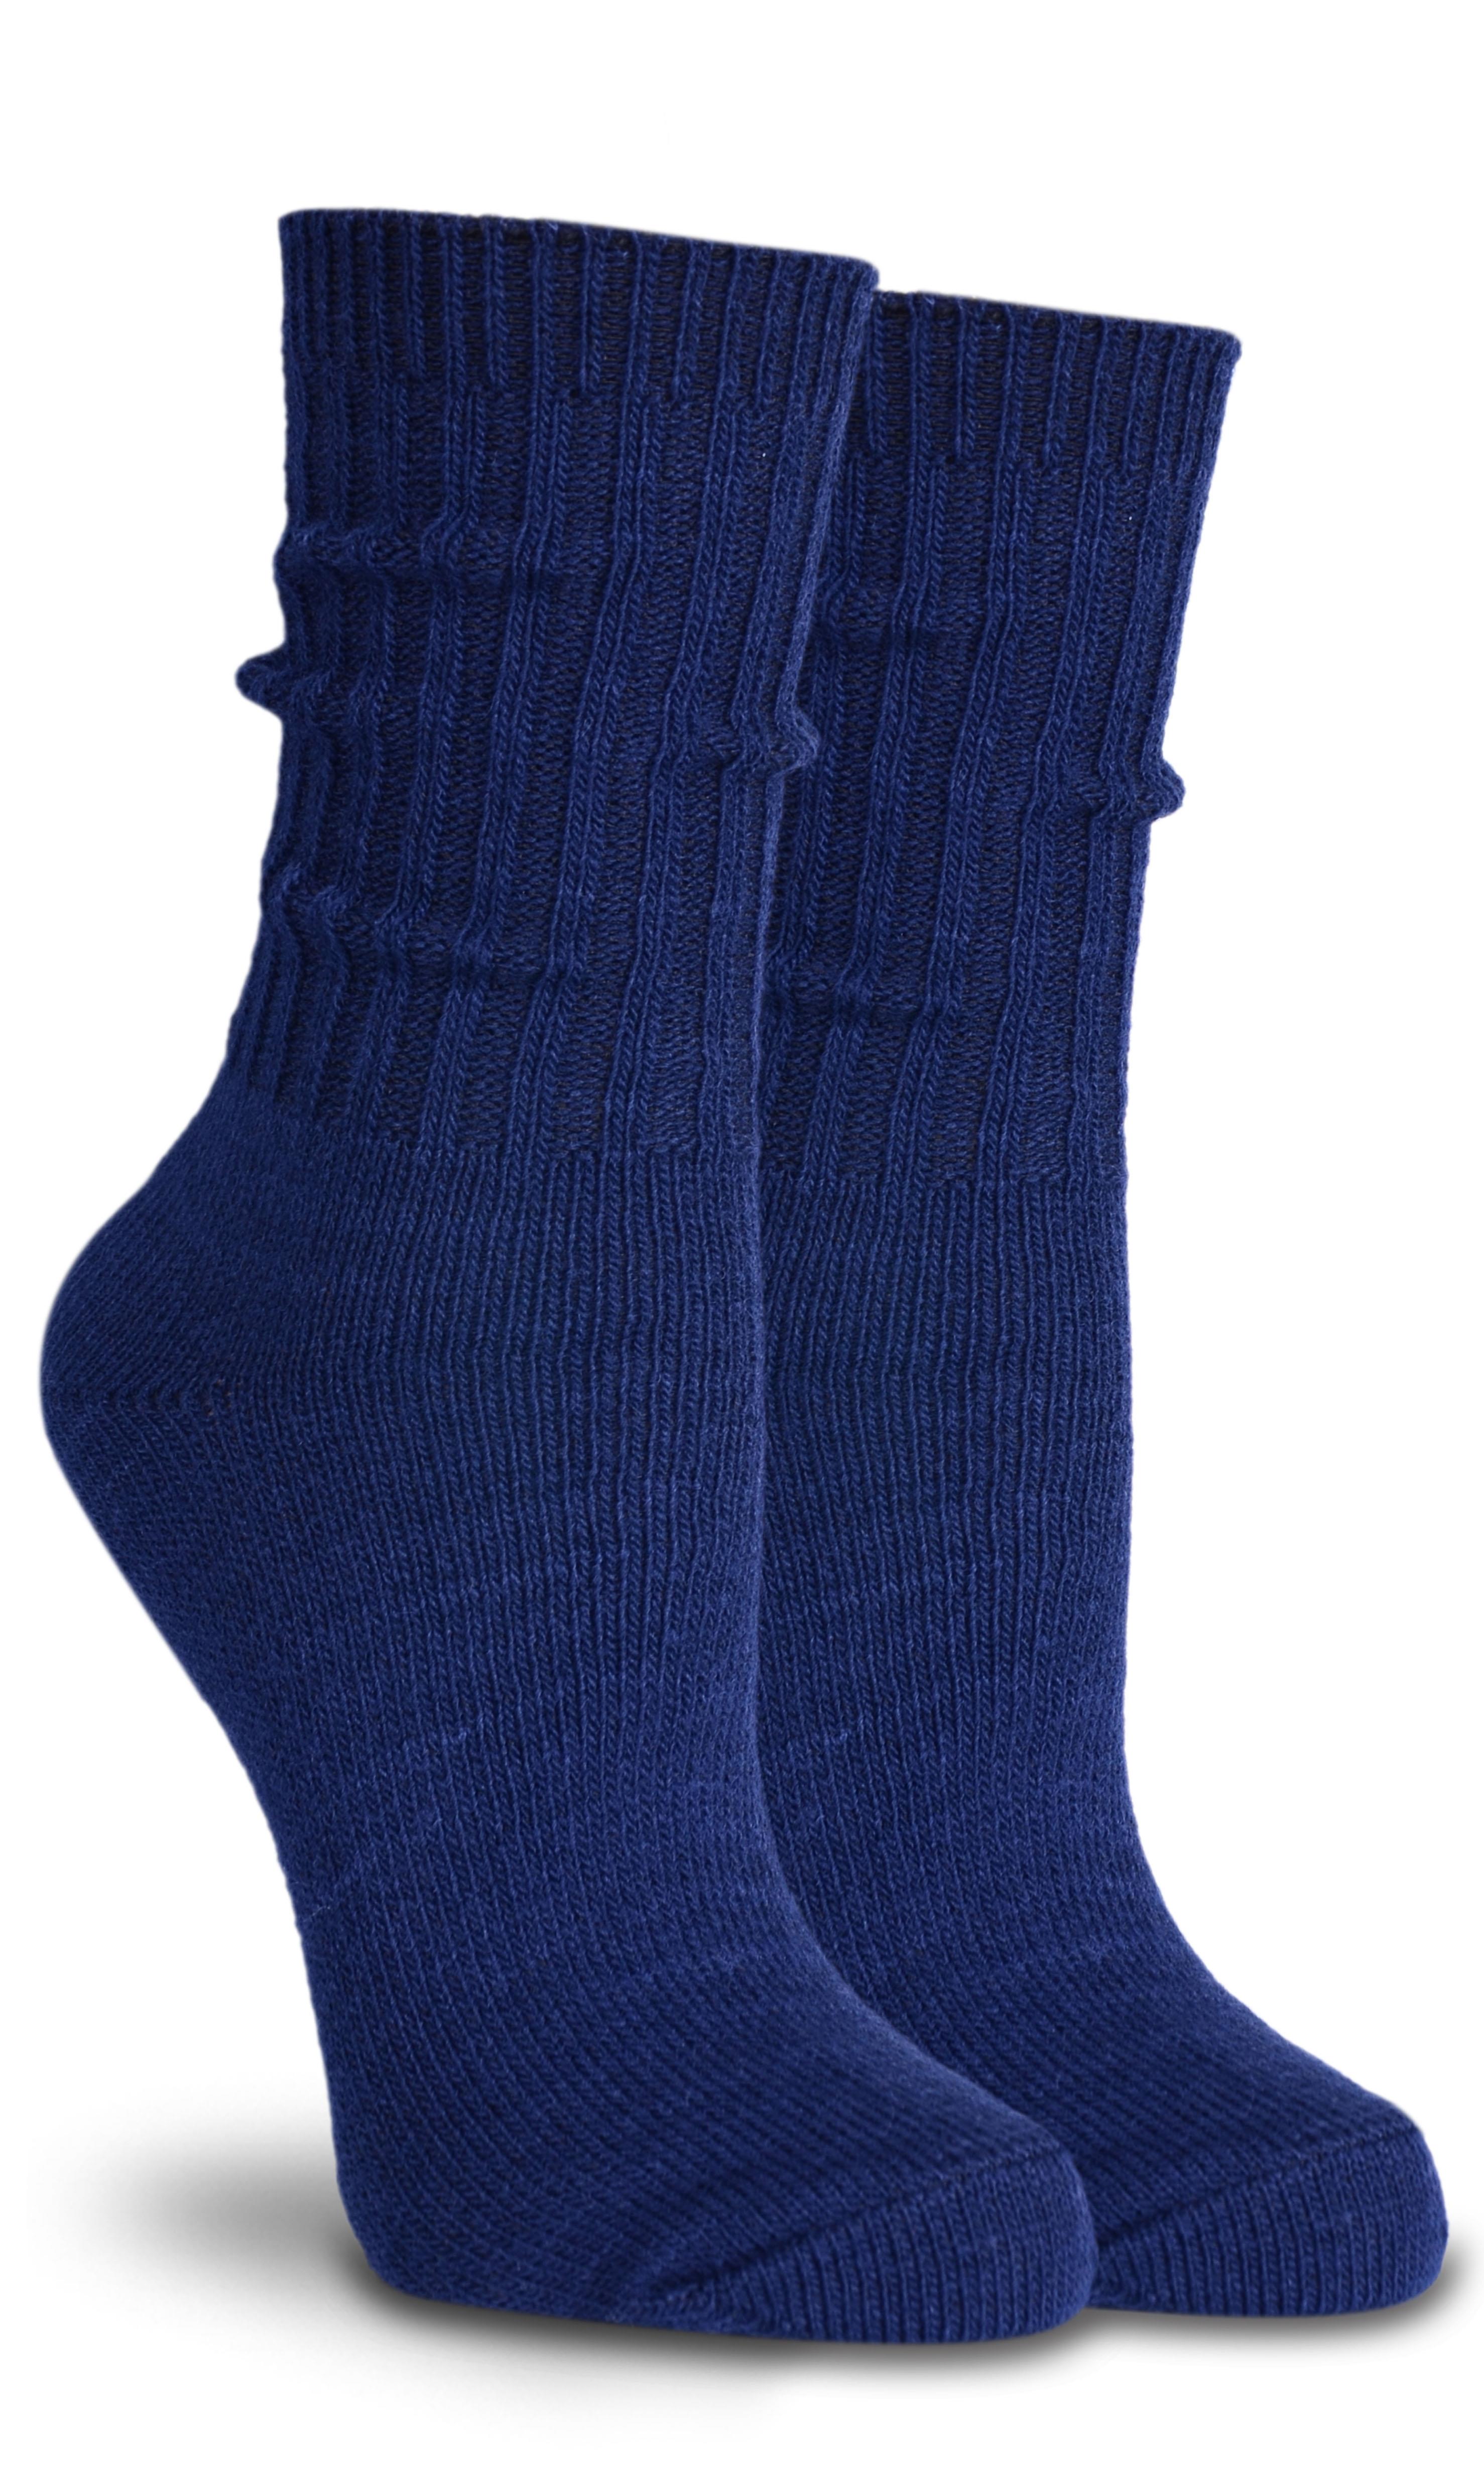 Kadın Yün Çorap Lacivert Renk Çizgi Detaylı